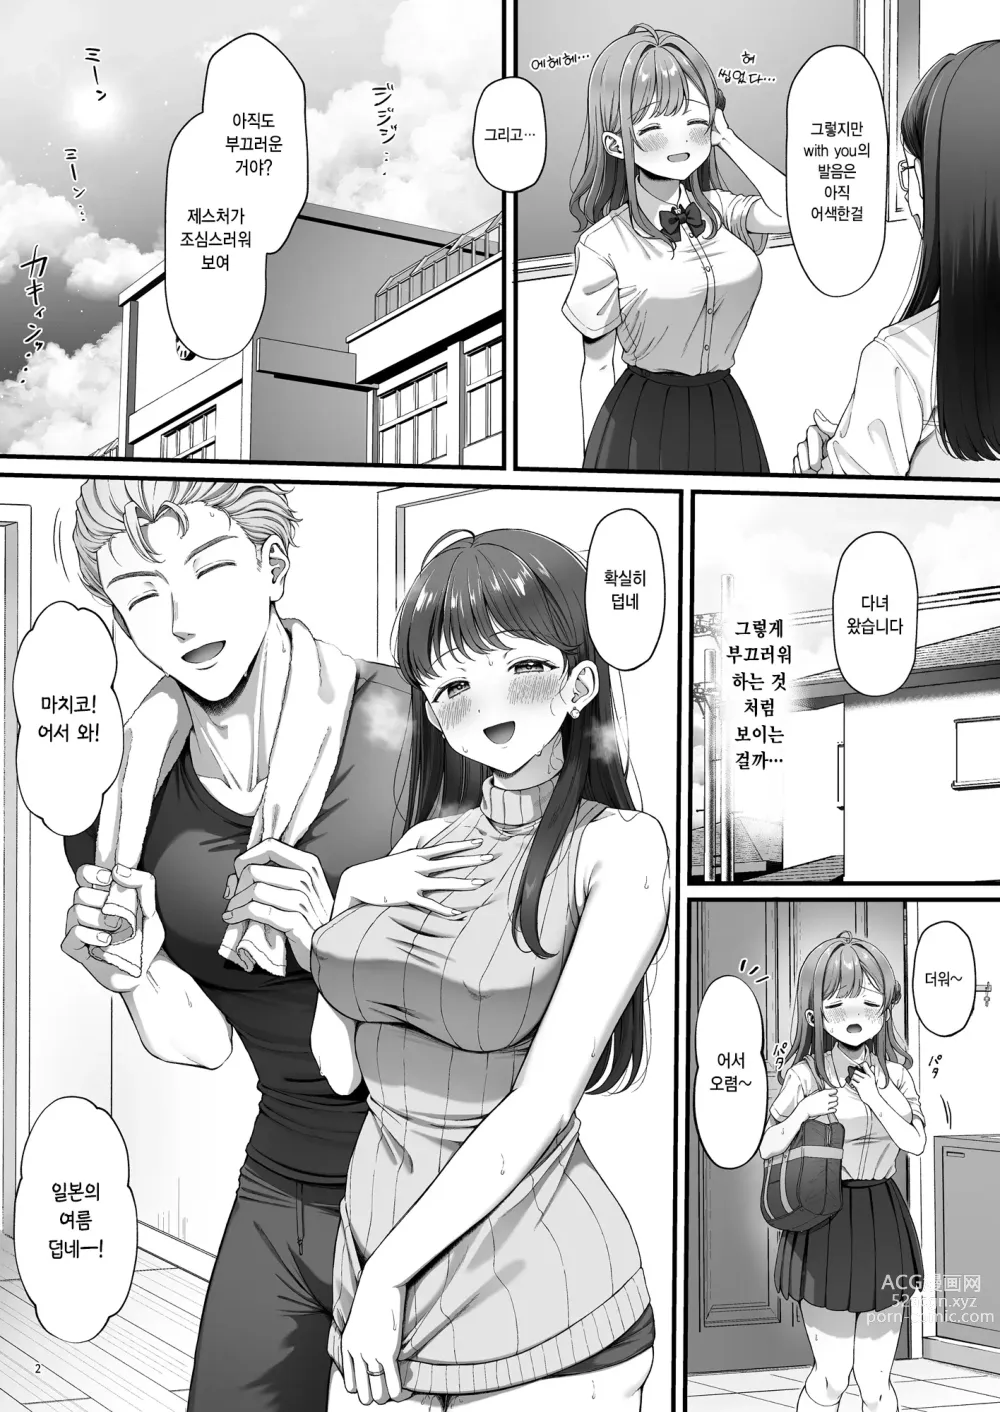 Page 4 of doujinshi 서머타임 홈스테이를 온 거근 유학생에게 개발 당한 처녀